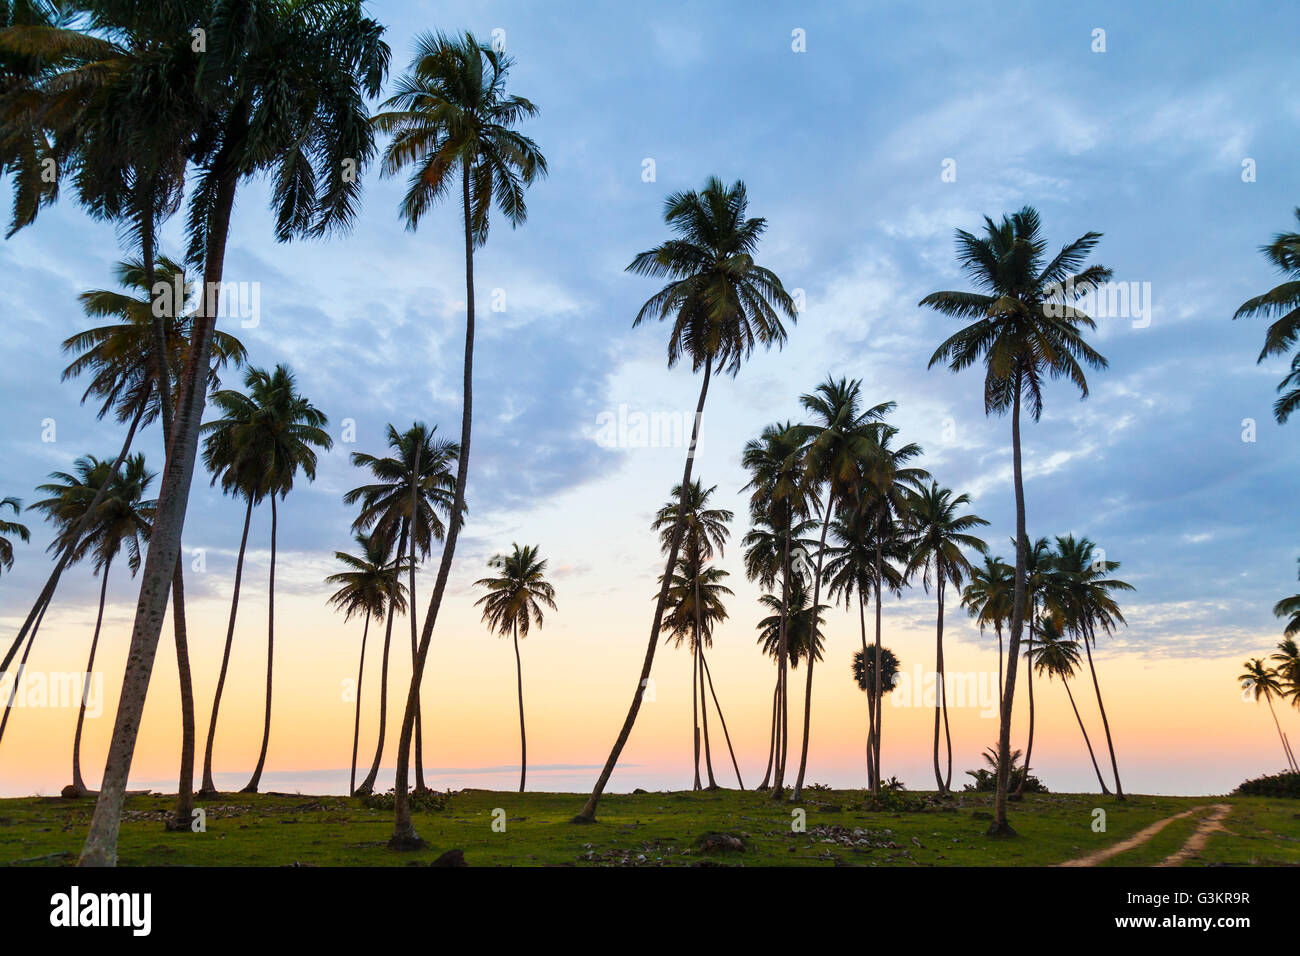 La silhouette des palmiers au coucher du soleil sur l'autre, la République dominicaine, les Caraïbes Banque D'Images